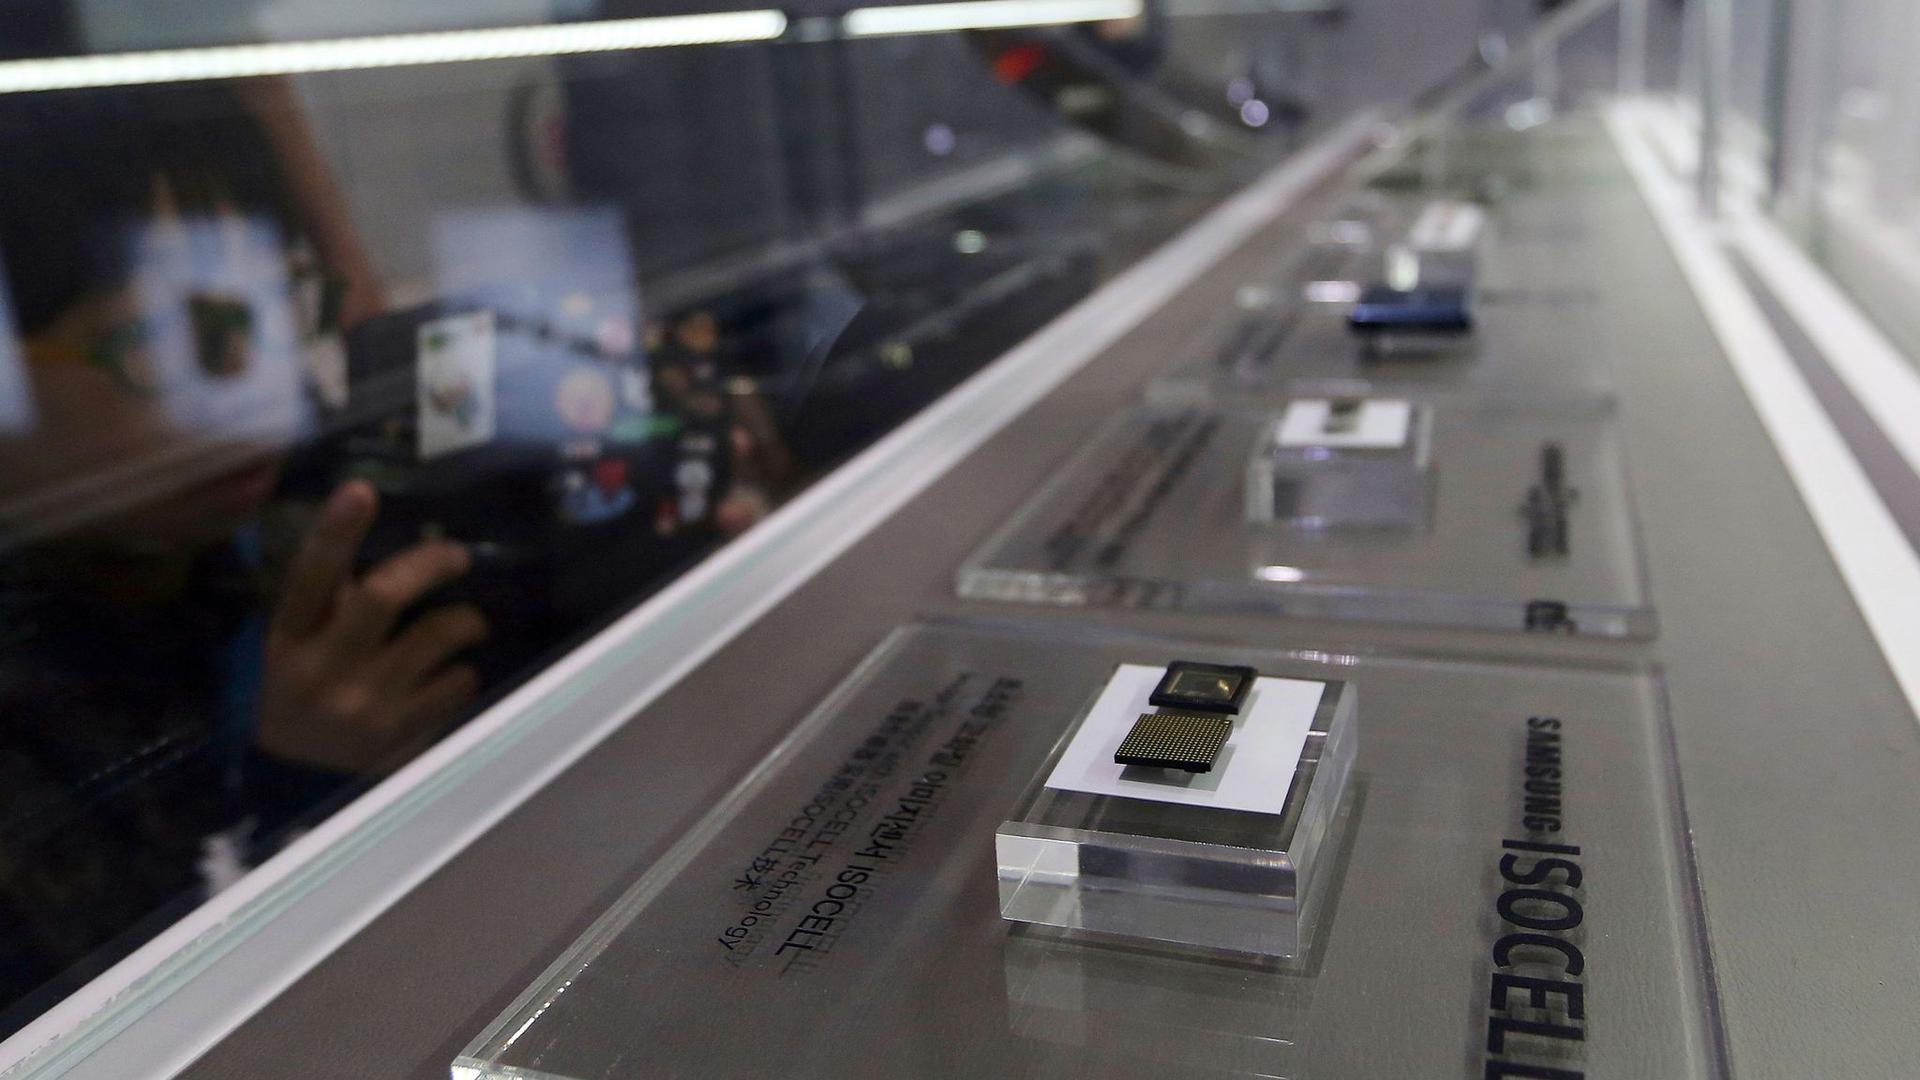 Mikrochips von Samsung Electronics werden in seinem Geschäft ausgestellt.